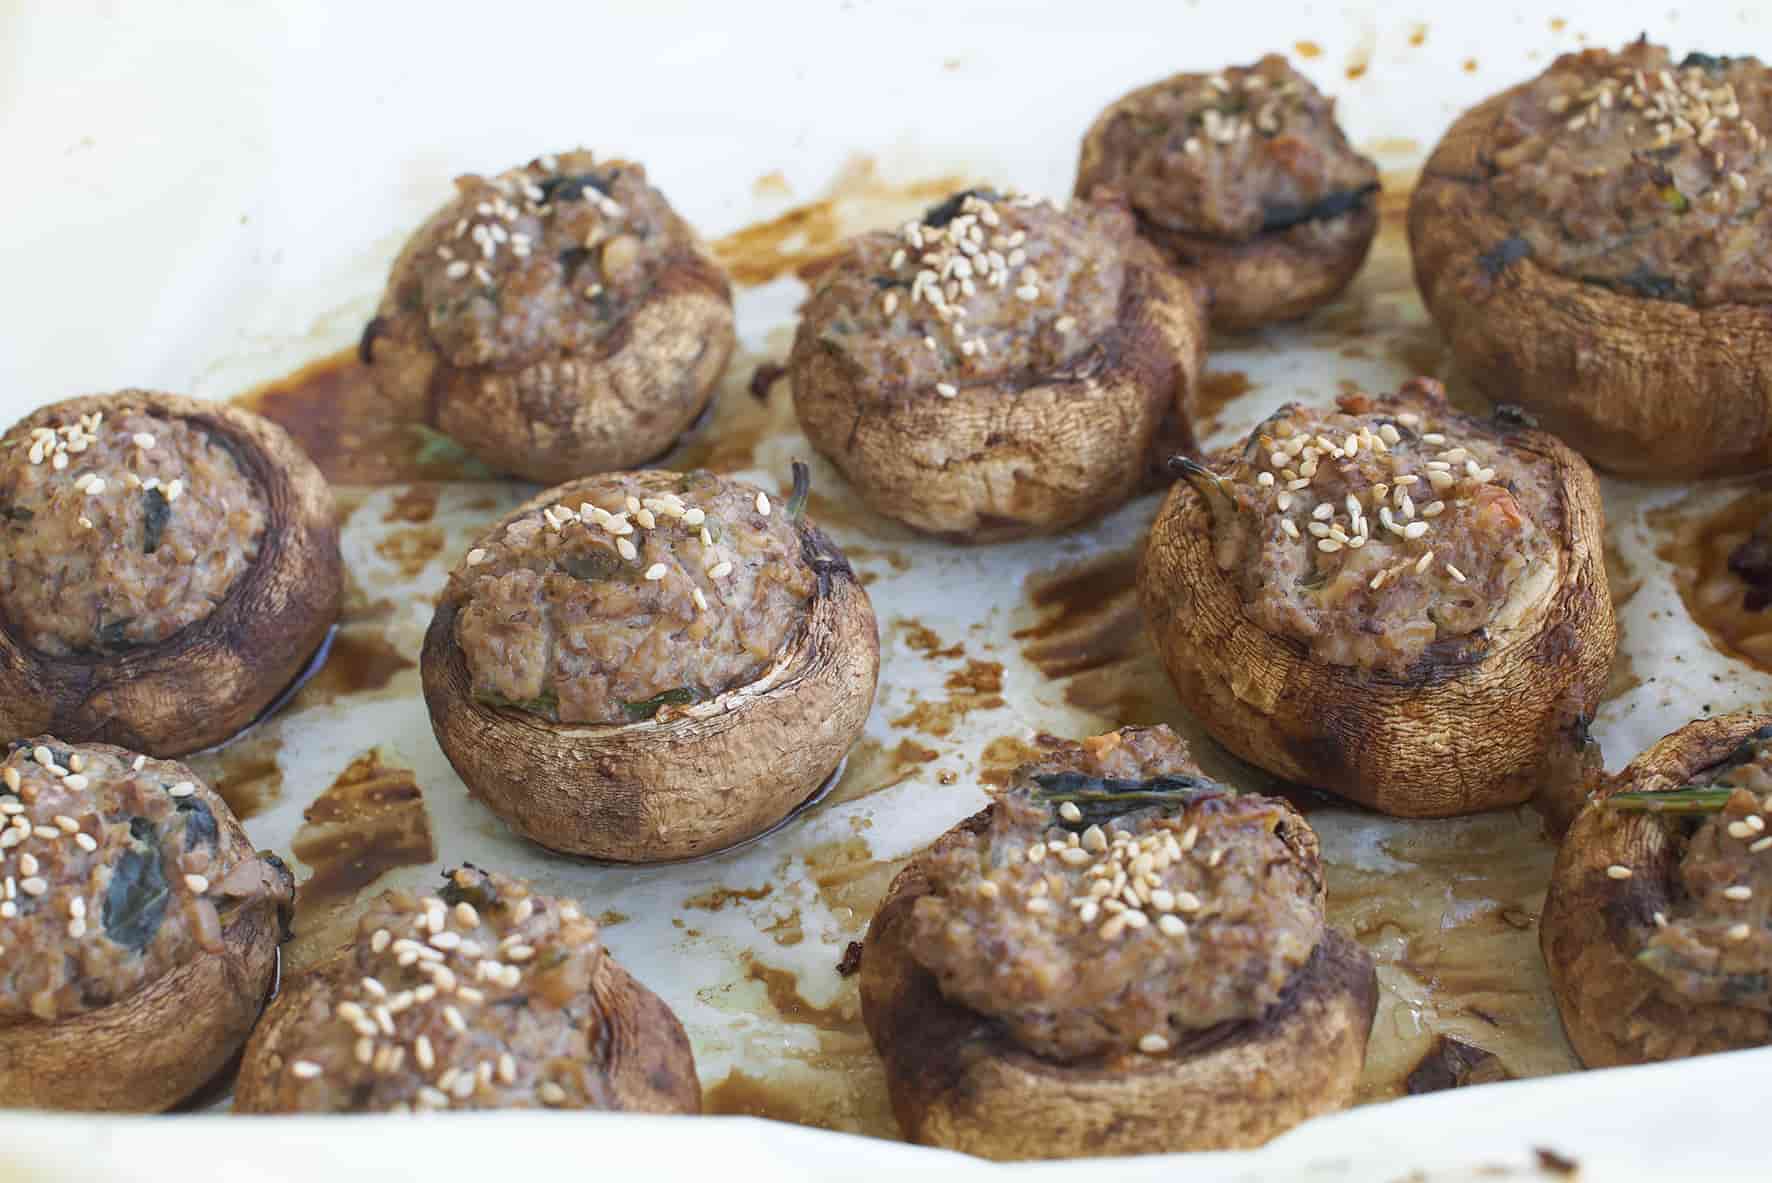 Vegan-stuffed-mushrooms-walnut-mince-meat-main-dish-recipes